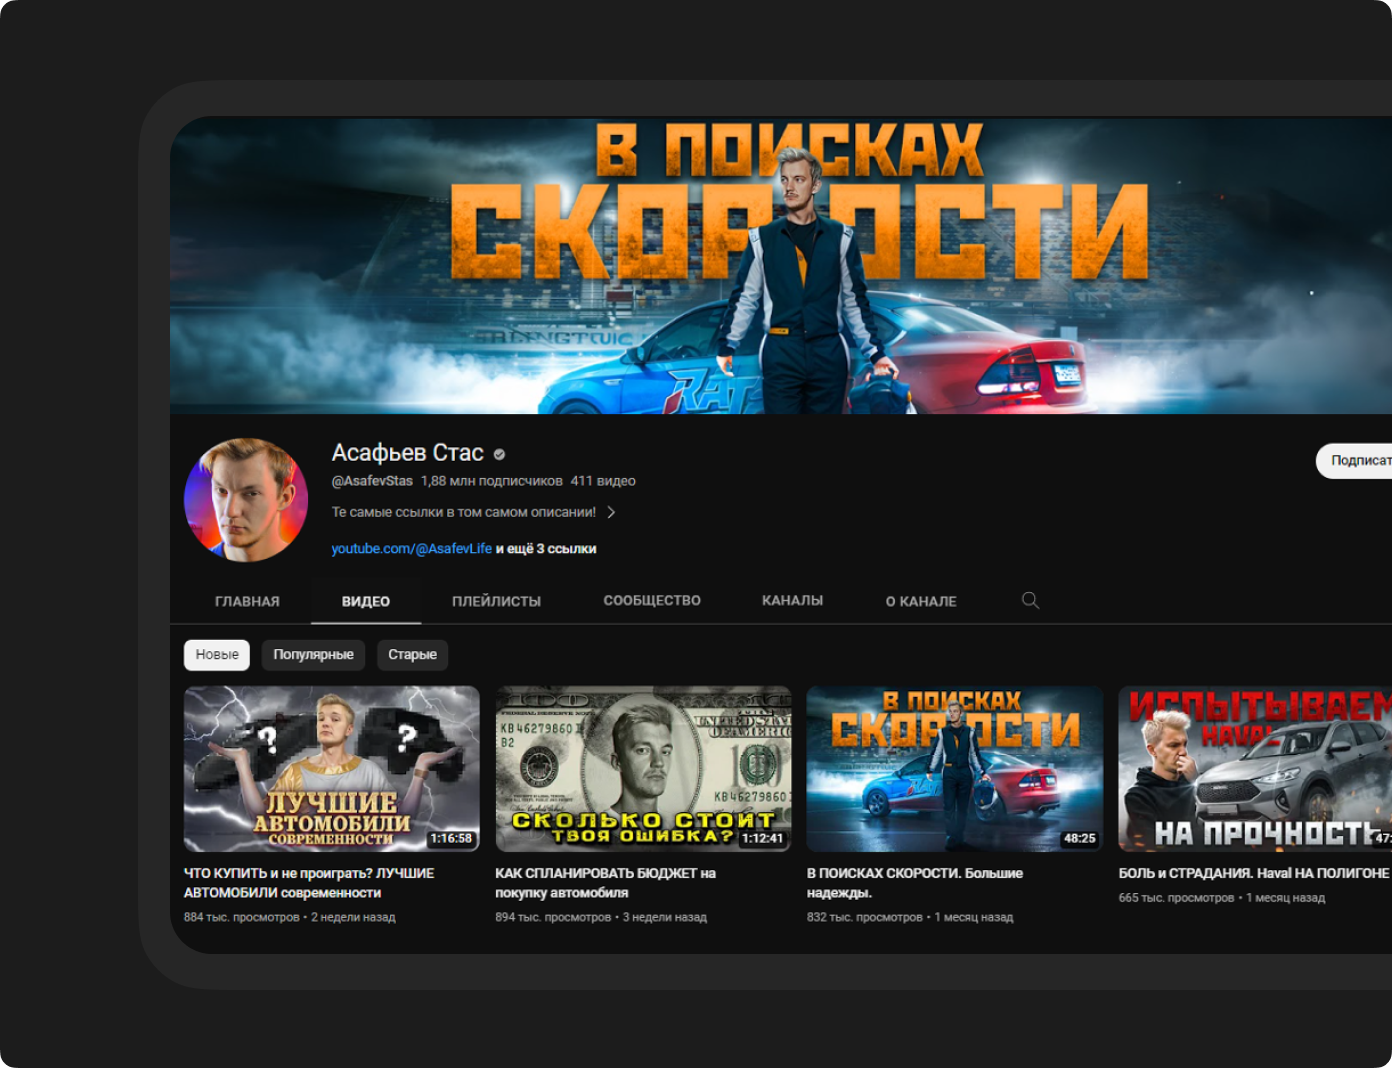 Блогеру Стасу Асафьеву личный бренд позволяет сотрудничать с крупными рекламодателями («Тинькофф», auto.ru и другие), а также продвигать собственный бизнес – компанию по подбору автомобилей с пробегом